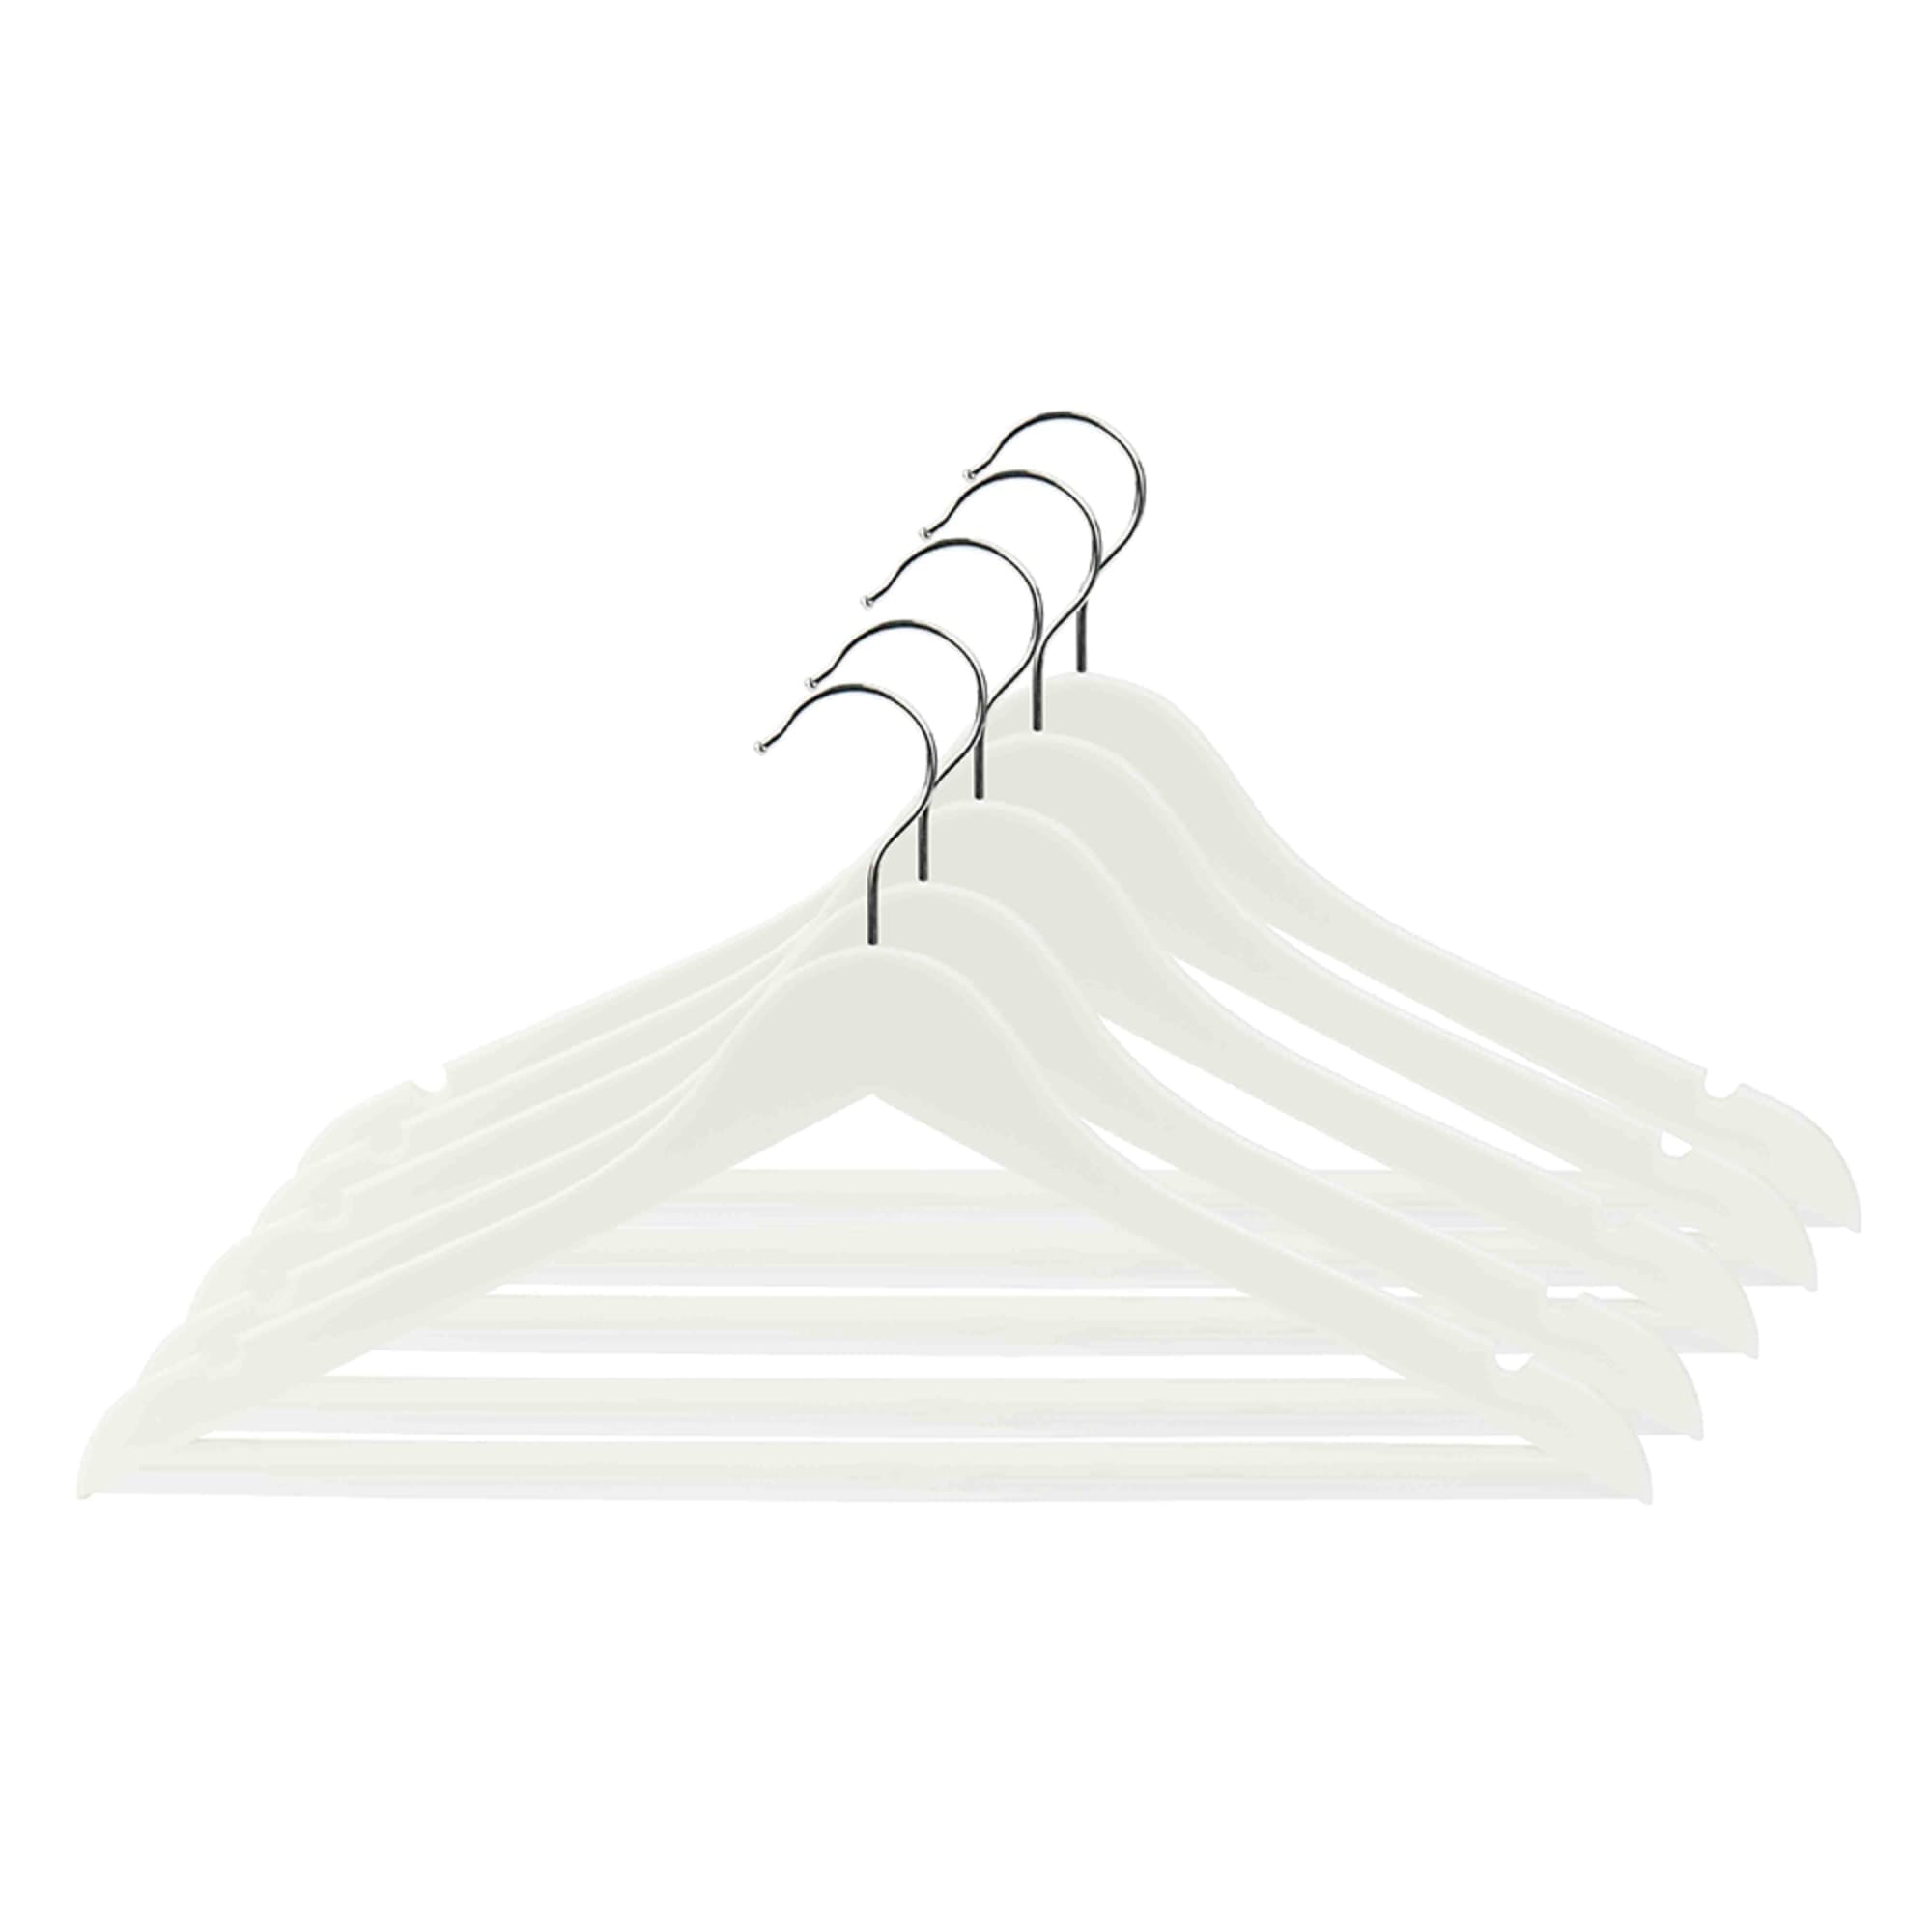 Home Basics Plastic Hanger, (Pack of 5), White $5.00 EACH, CASE PACK OF 12